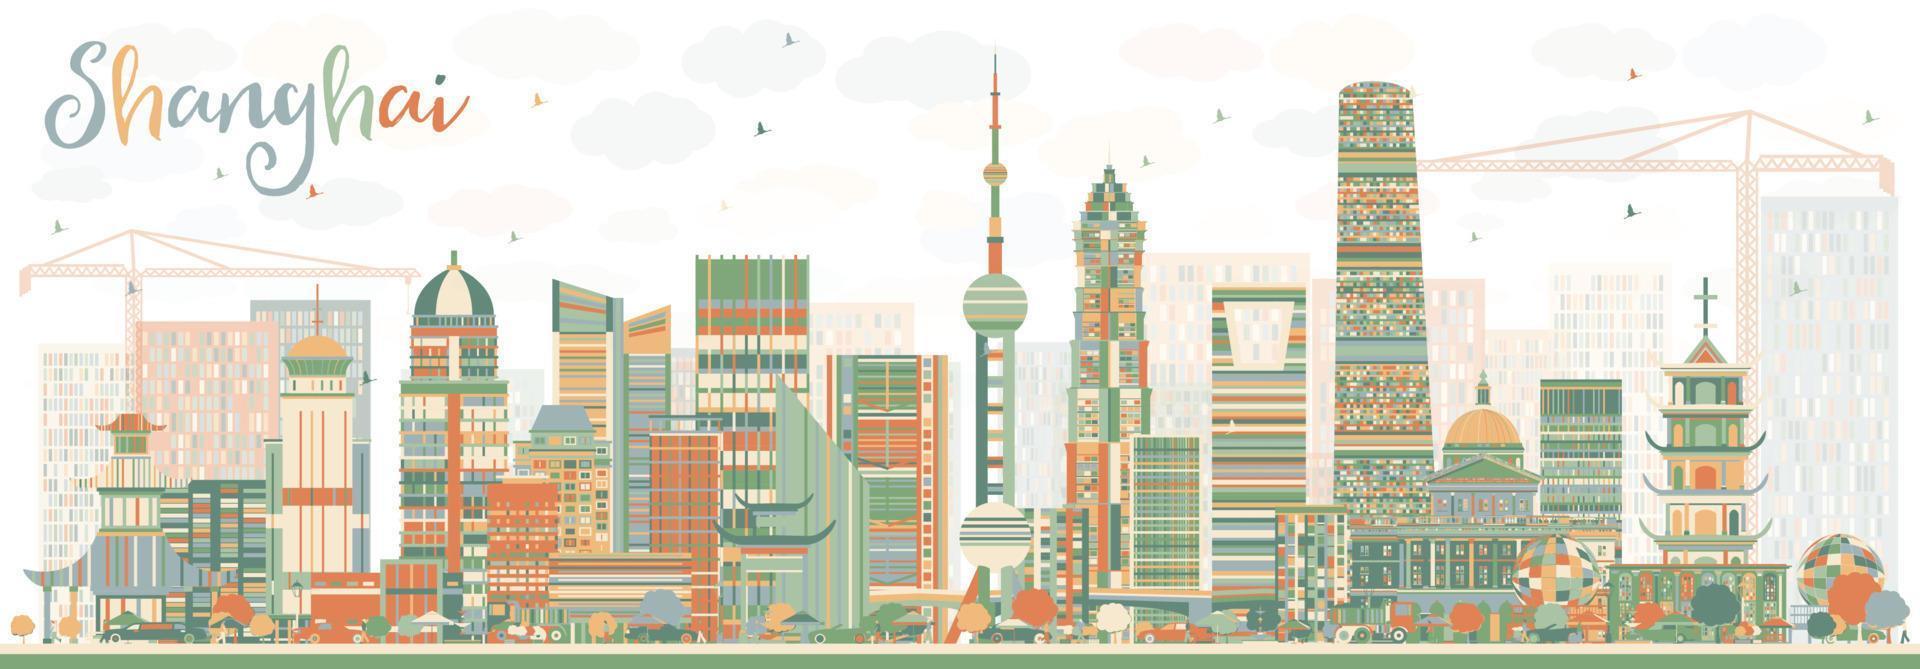 Shanghai Skyline with Color Buildings. vector